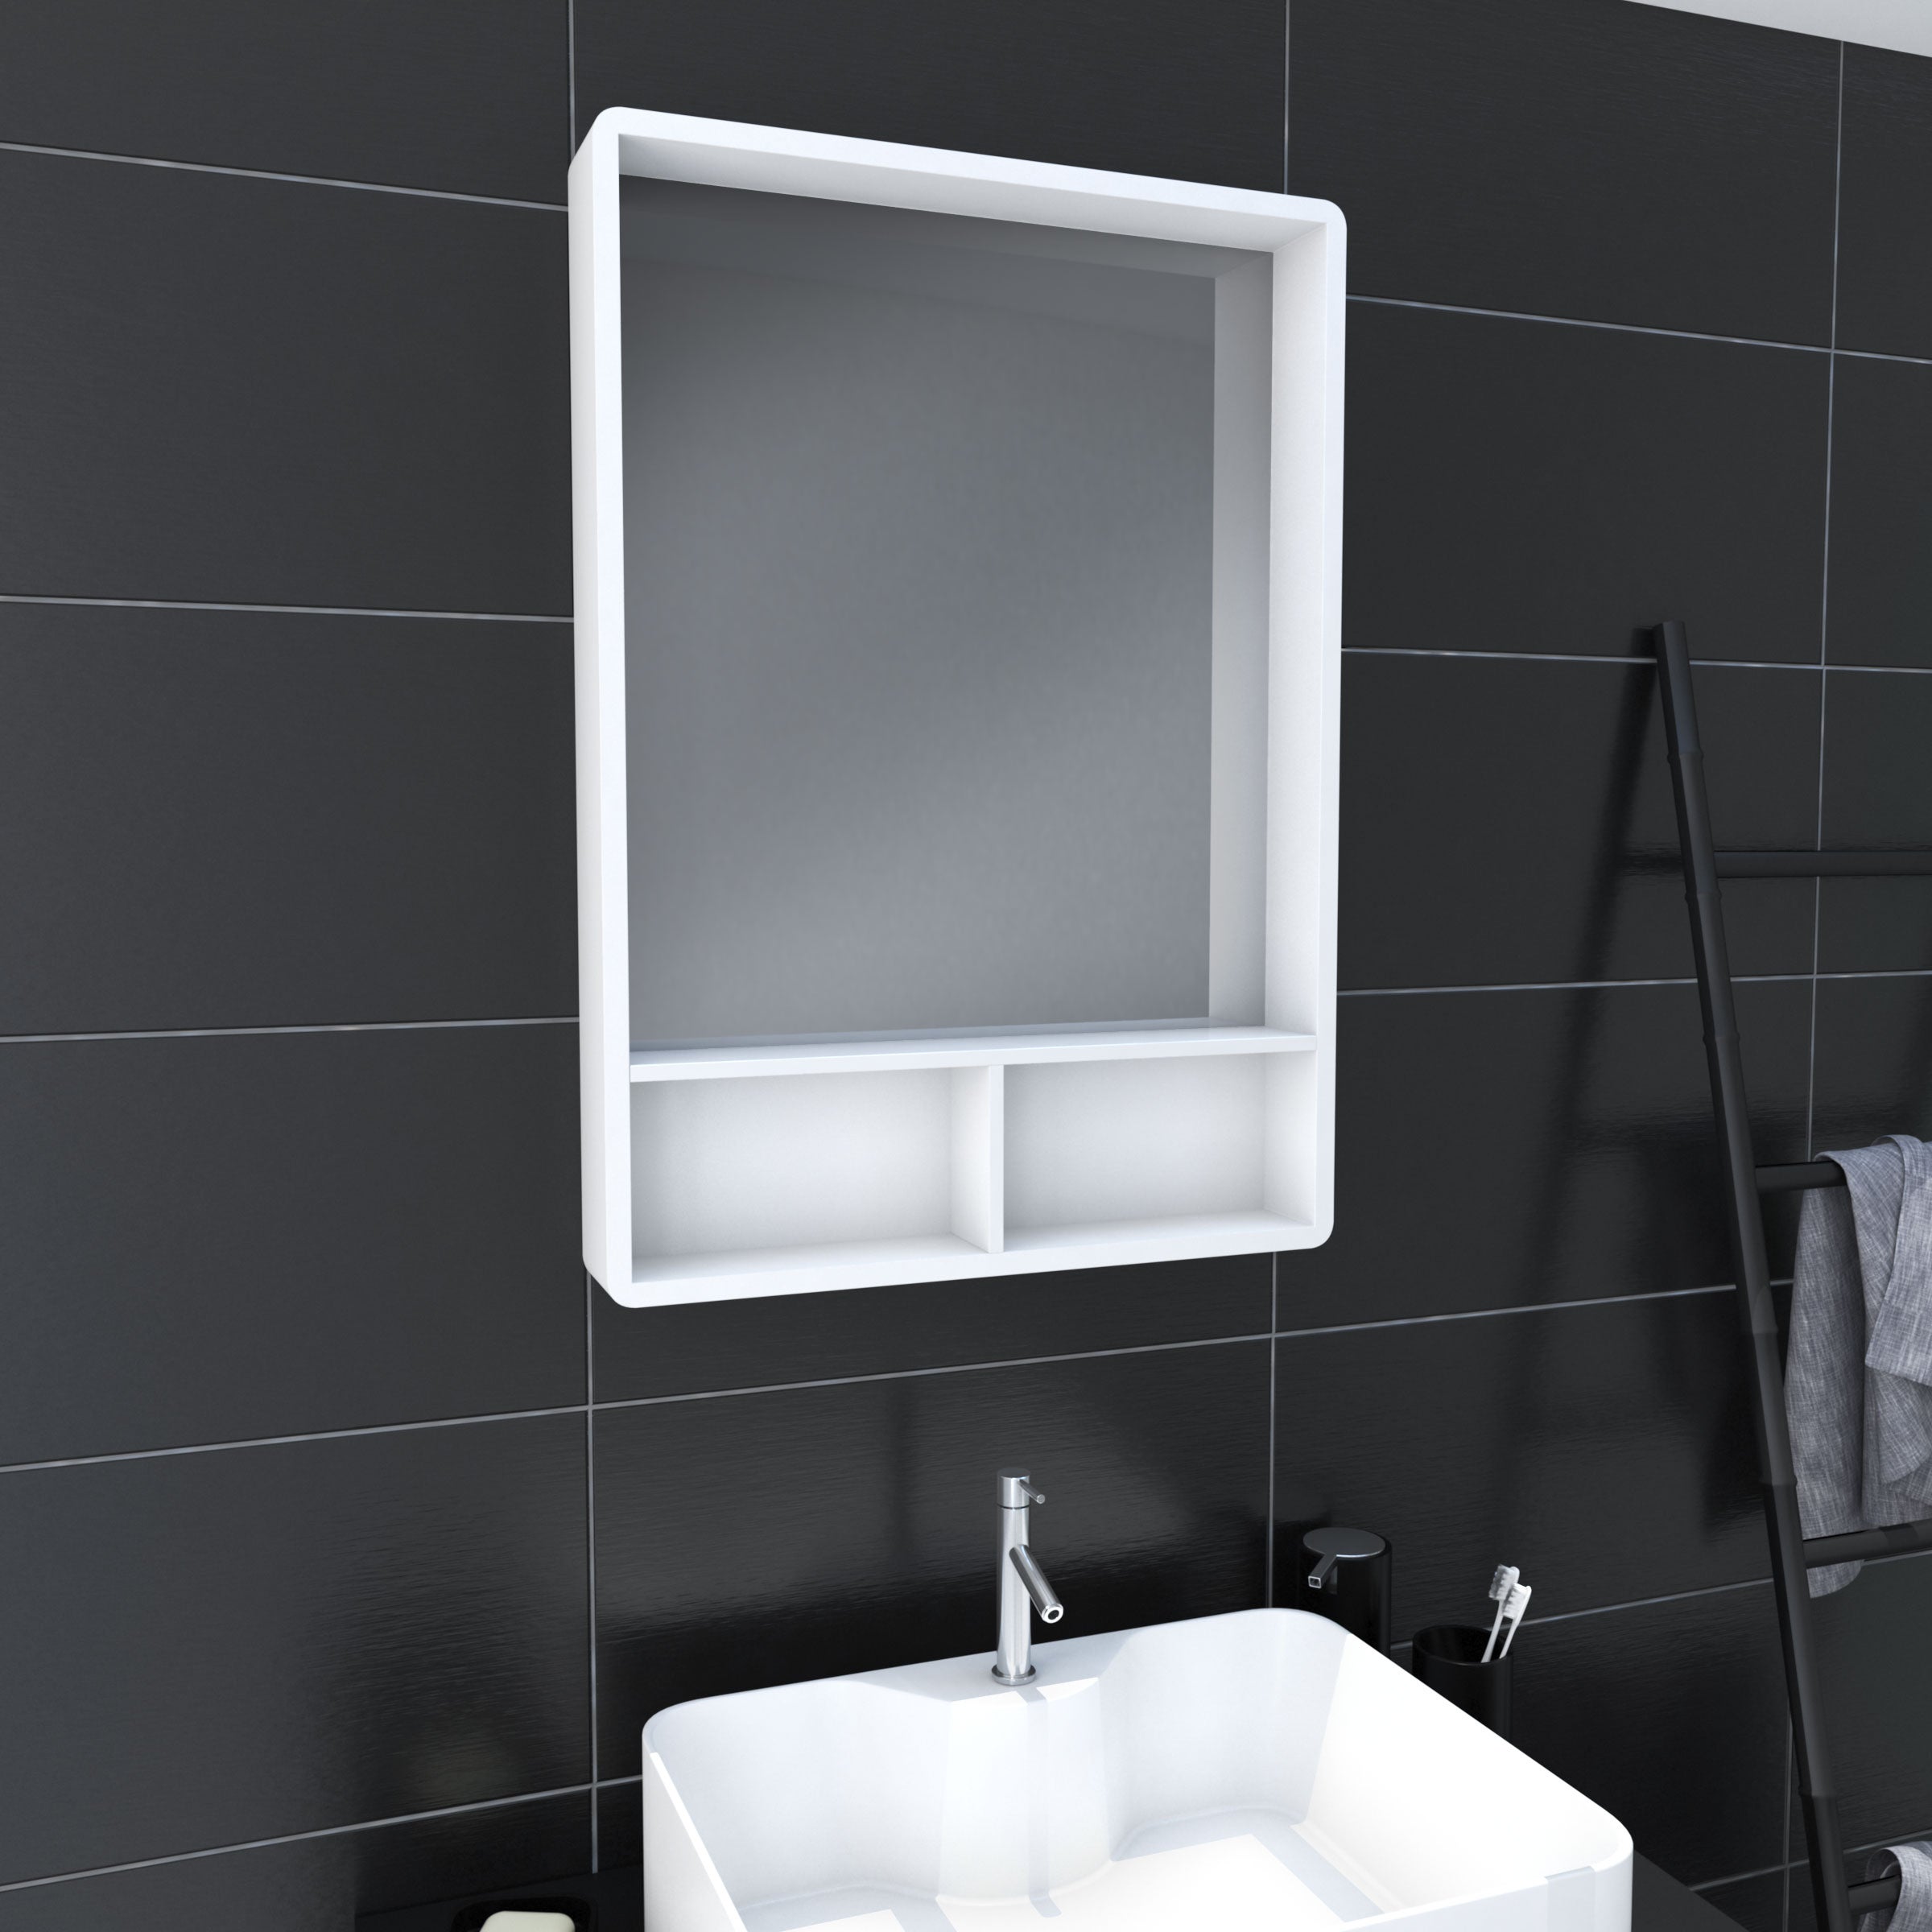 Miroir salle de bain 40x60cm avec éclairage – Go LED - AURLANE